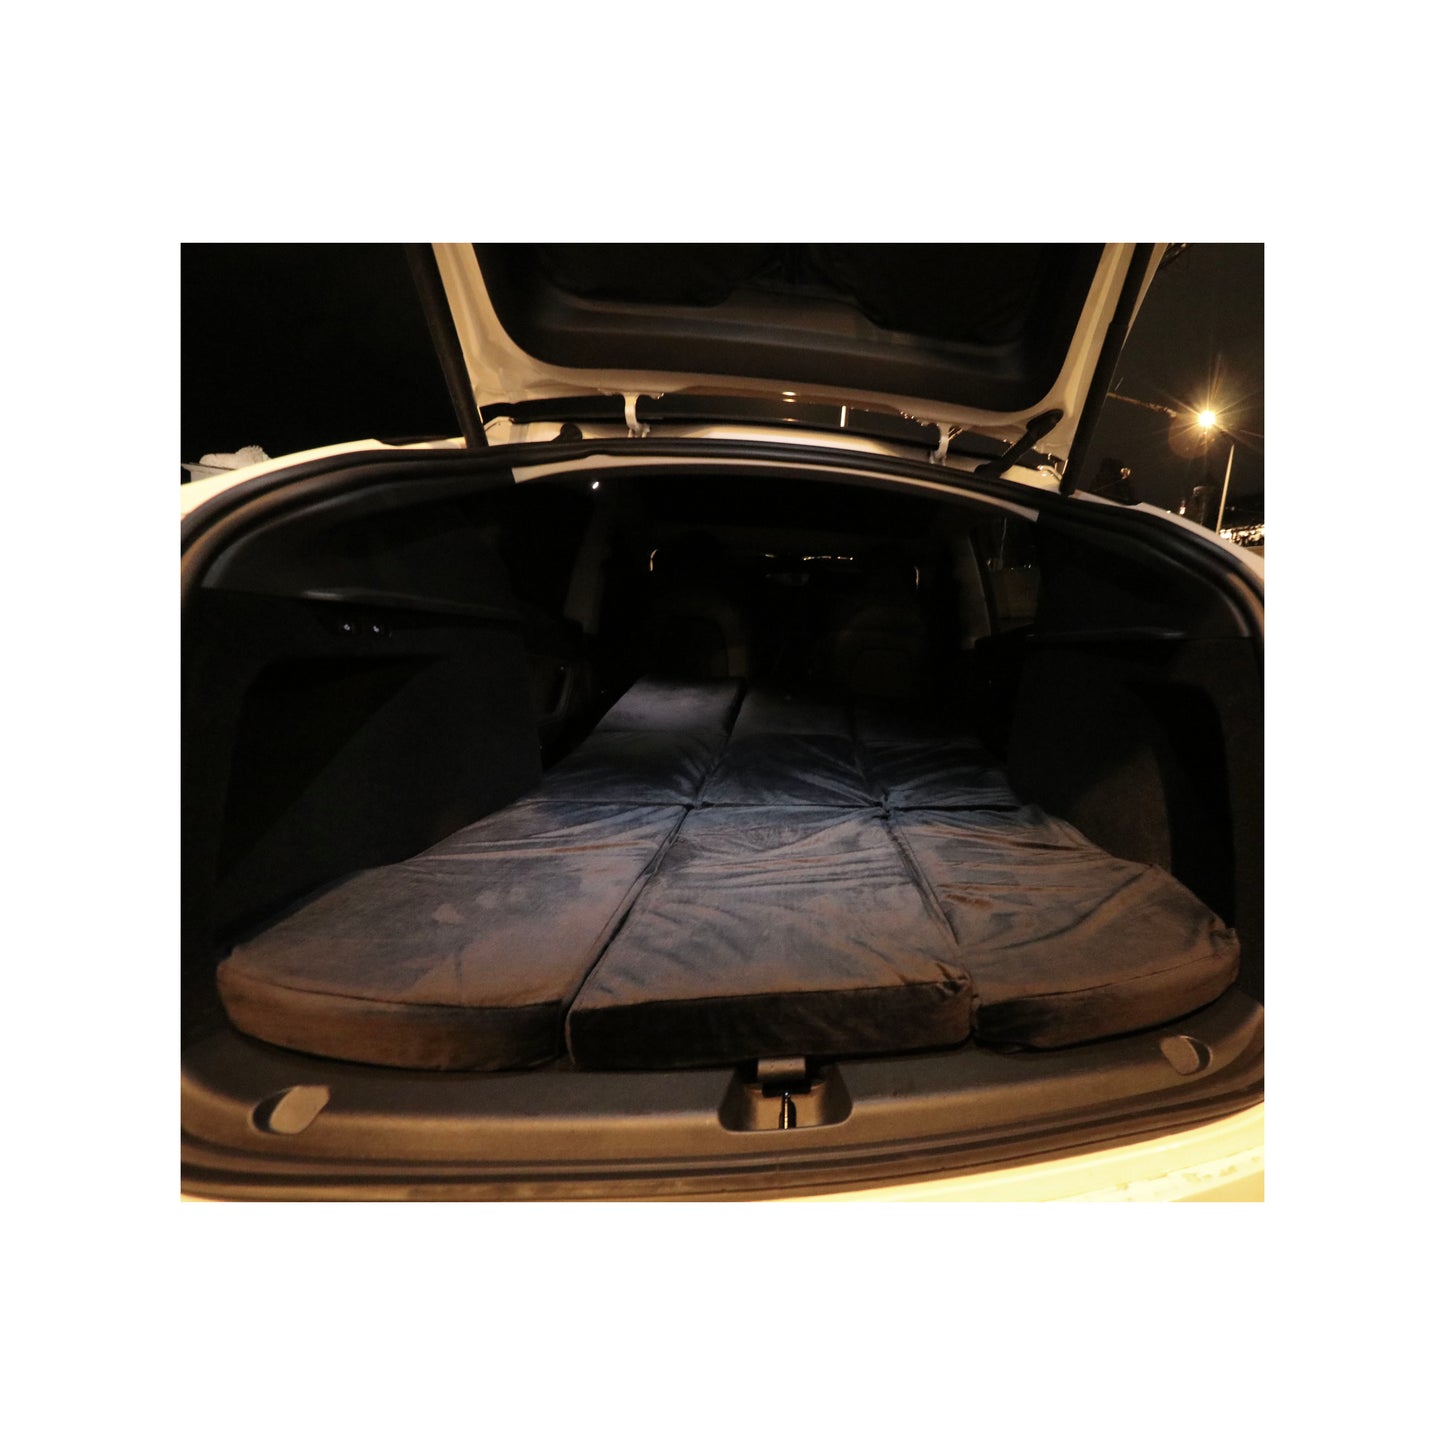 EV-MATS Tesla Model 3 matrac és hordtáska prémium memóriahabos matrac, tökéletesen illeszkedik a Tesla Model 3 méreteihez, kivételes kényelmet biztosít alváshoz, és könnyedén tárolható a csomagtartóban